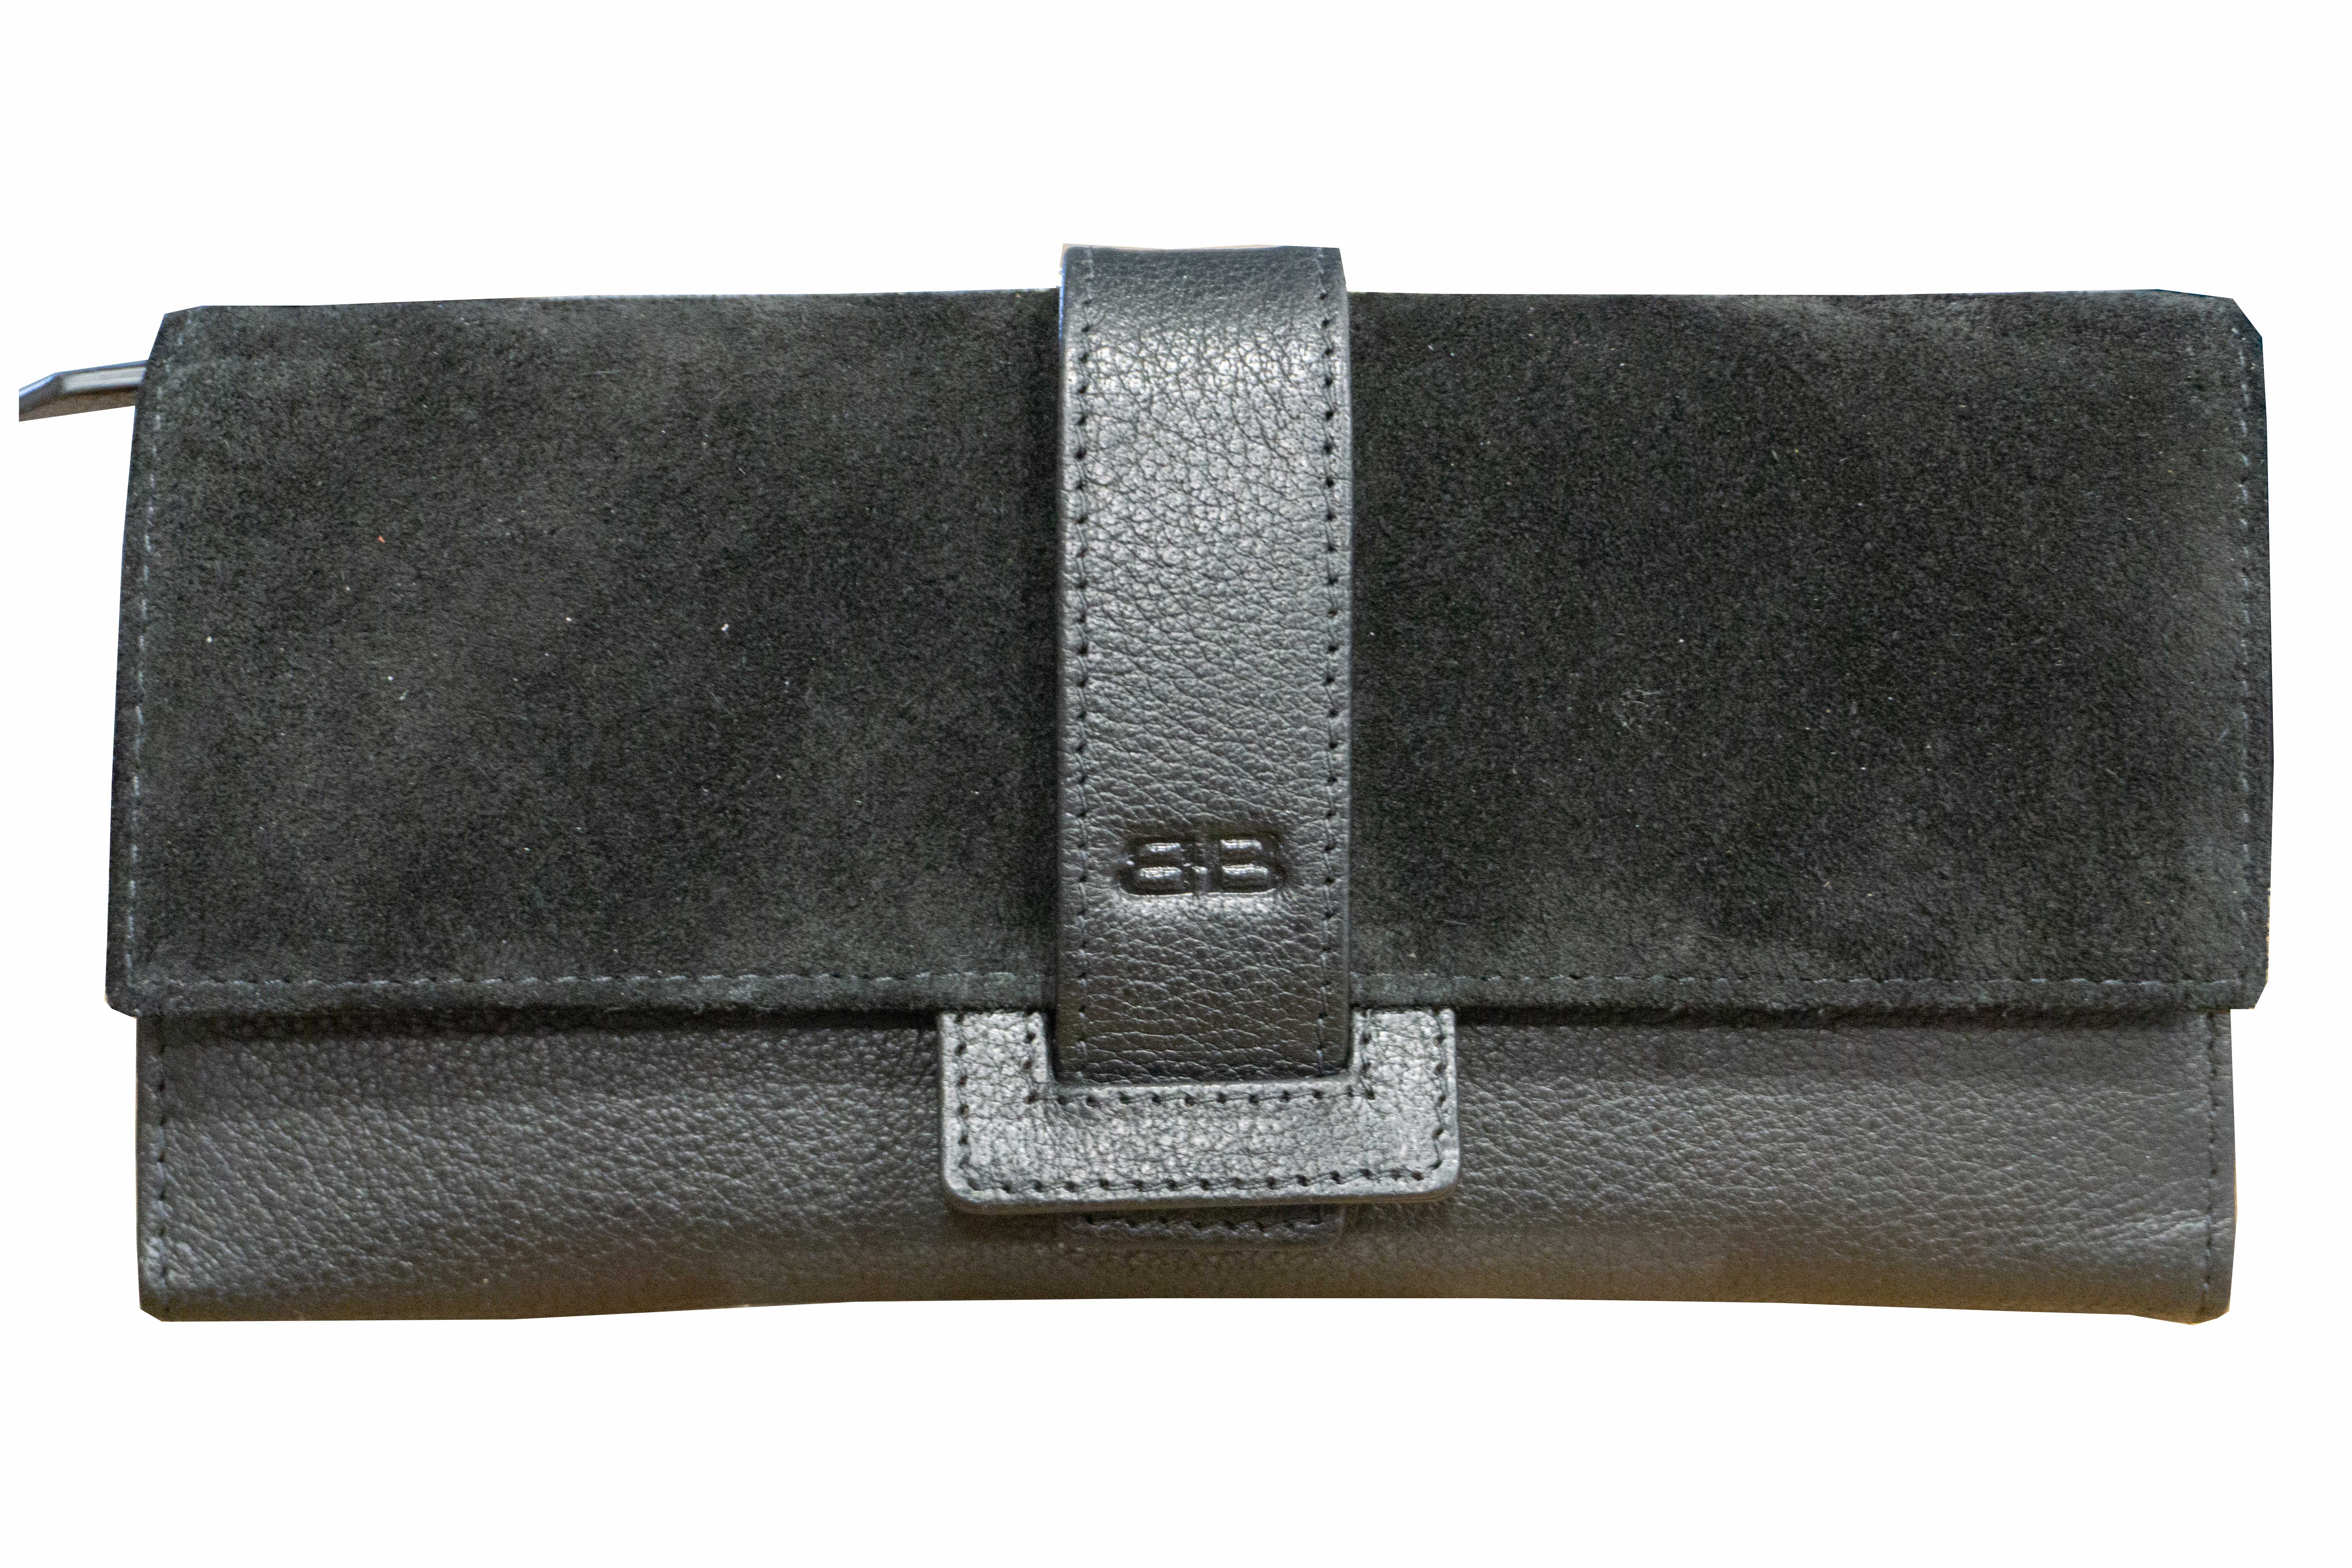 Damenbörse mit Überschlag Glattleder Suede RFID in schwarz von Bernardo Bossi - K-230-60